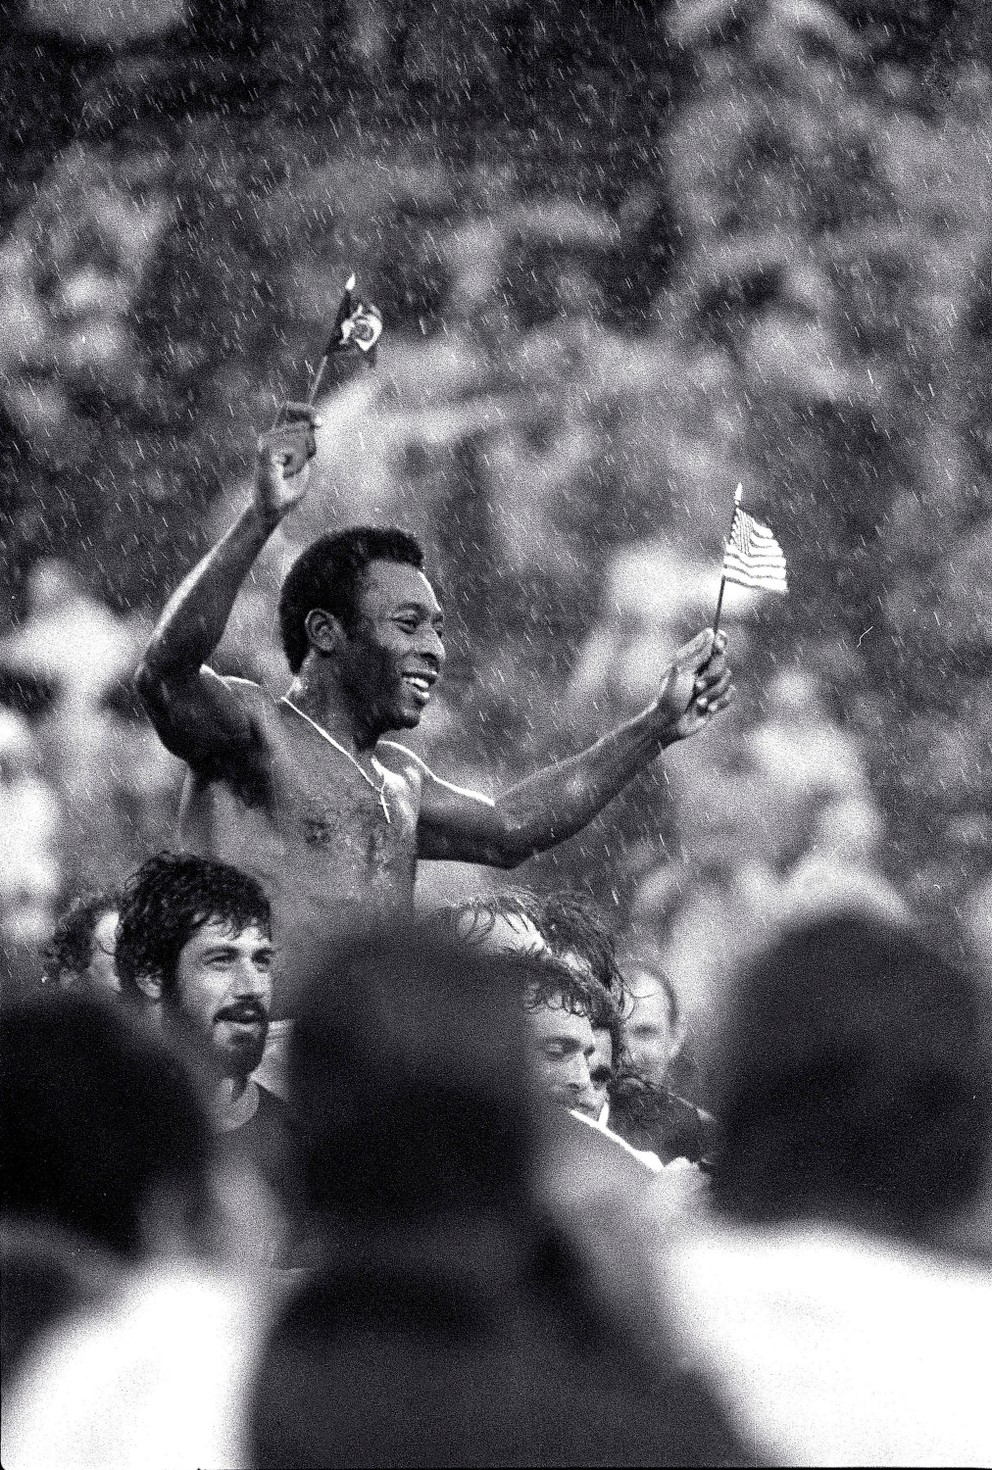 Futbalovú superhviezdu Pelého, mávajúcu vlajkami Brazílie a USA, odnášajú hráči oboch tímov z ihriska v silnom daždi na štadióne Giants v East Rutherford, N.J., po jeho poslednom zápase 1. októbra 1977.